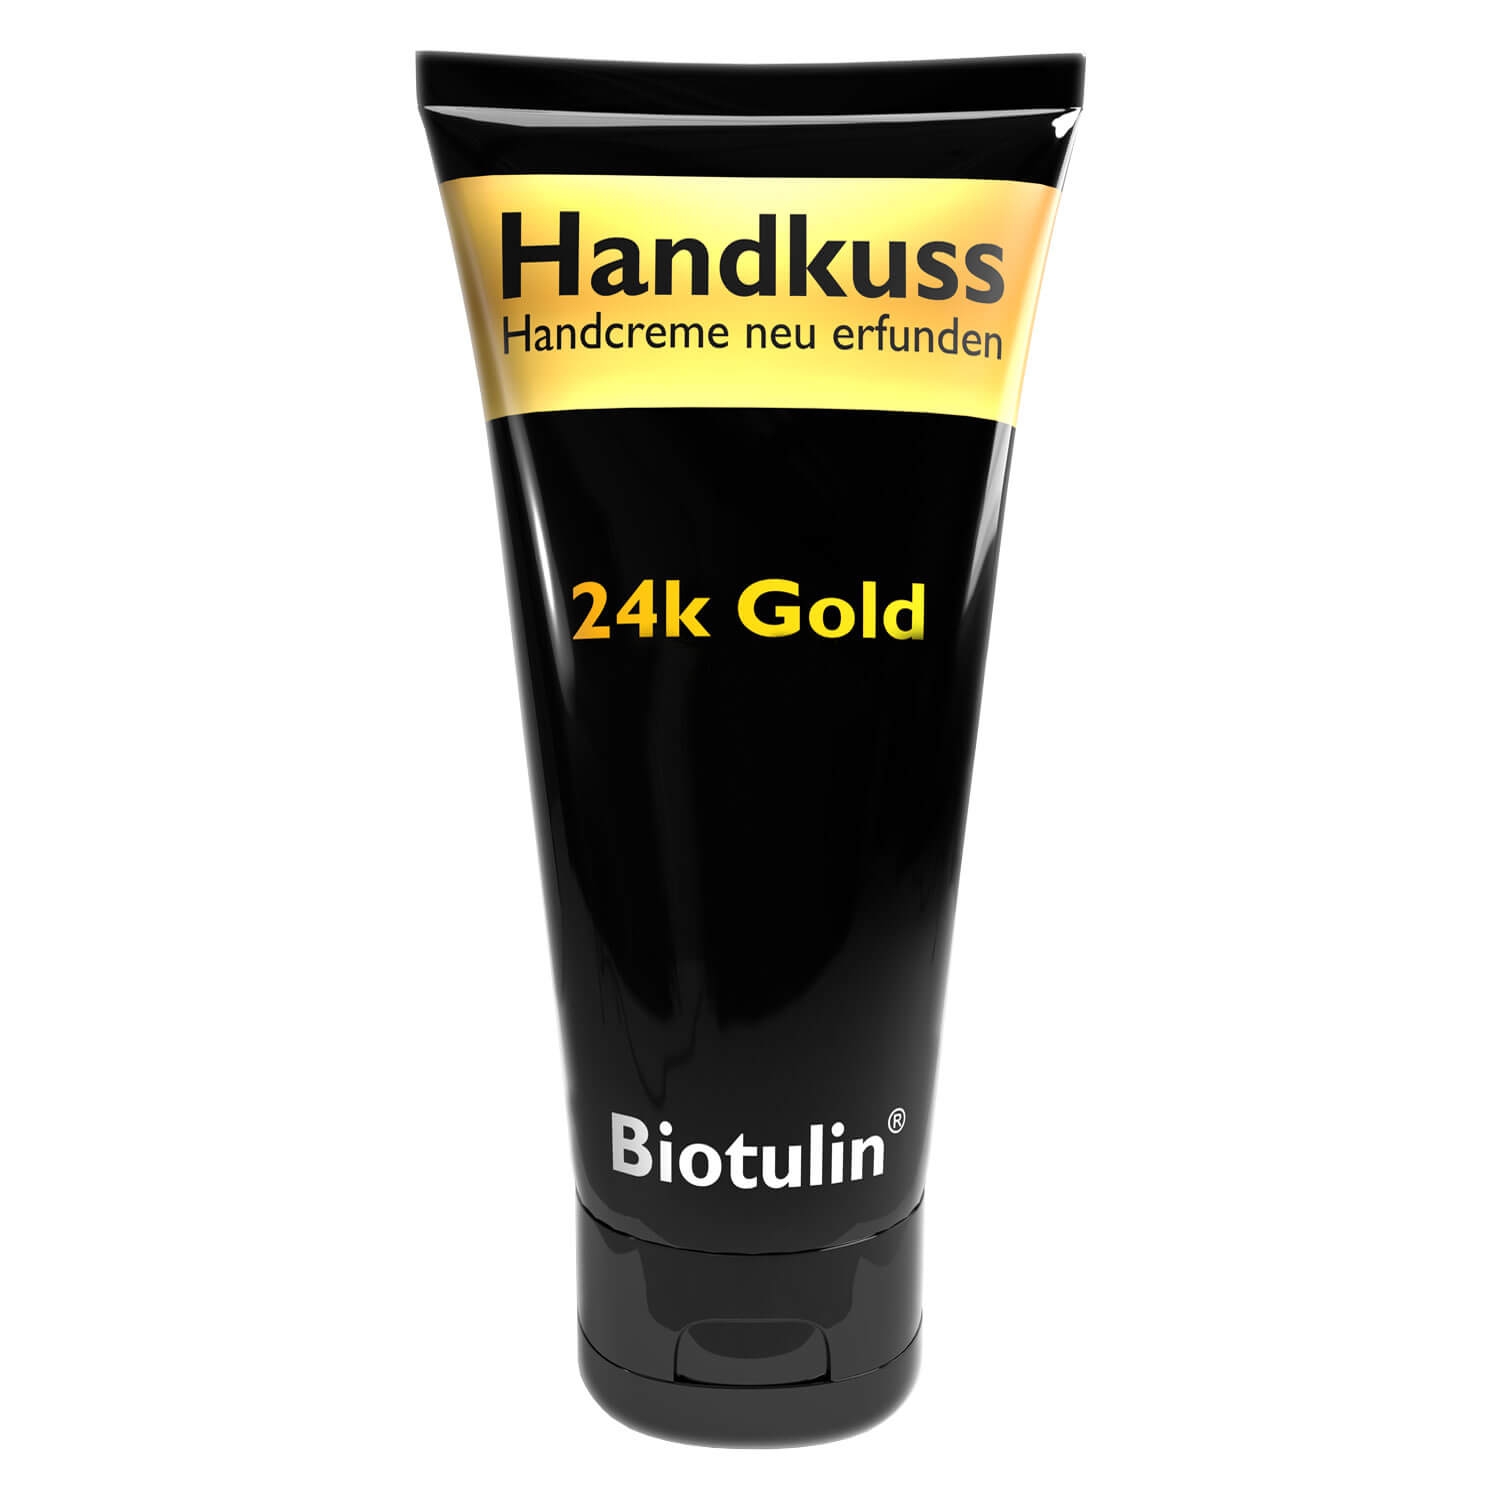 Produktbild von Biotulin - Handkuss